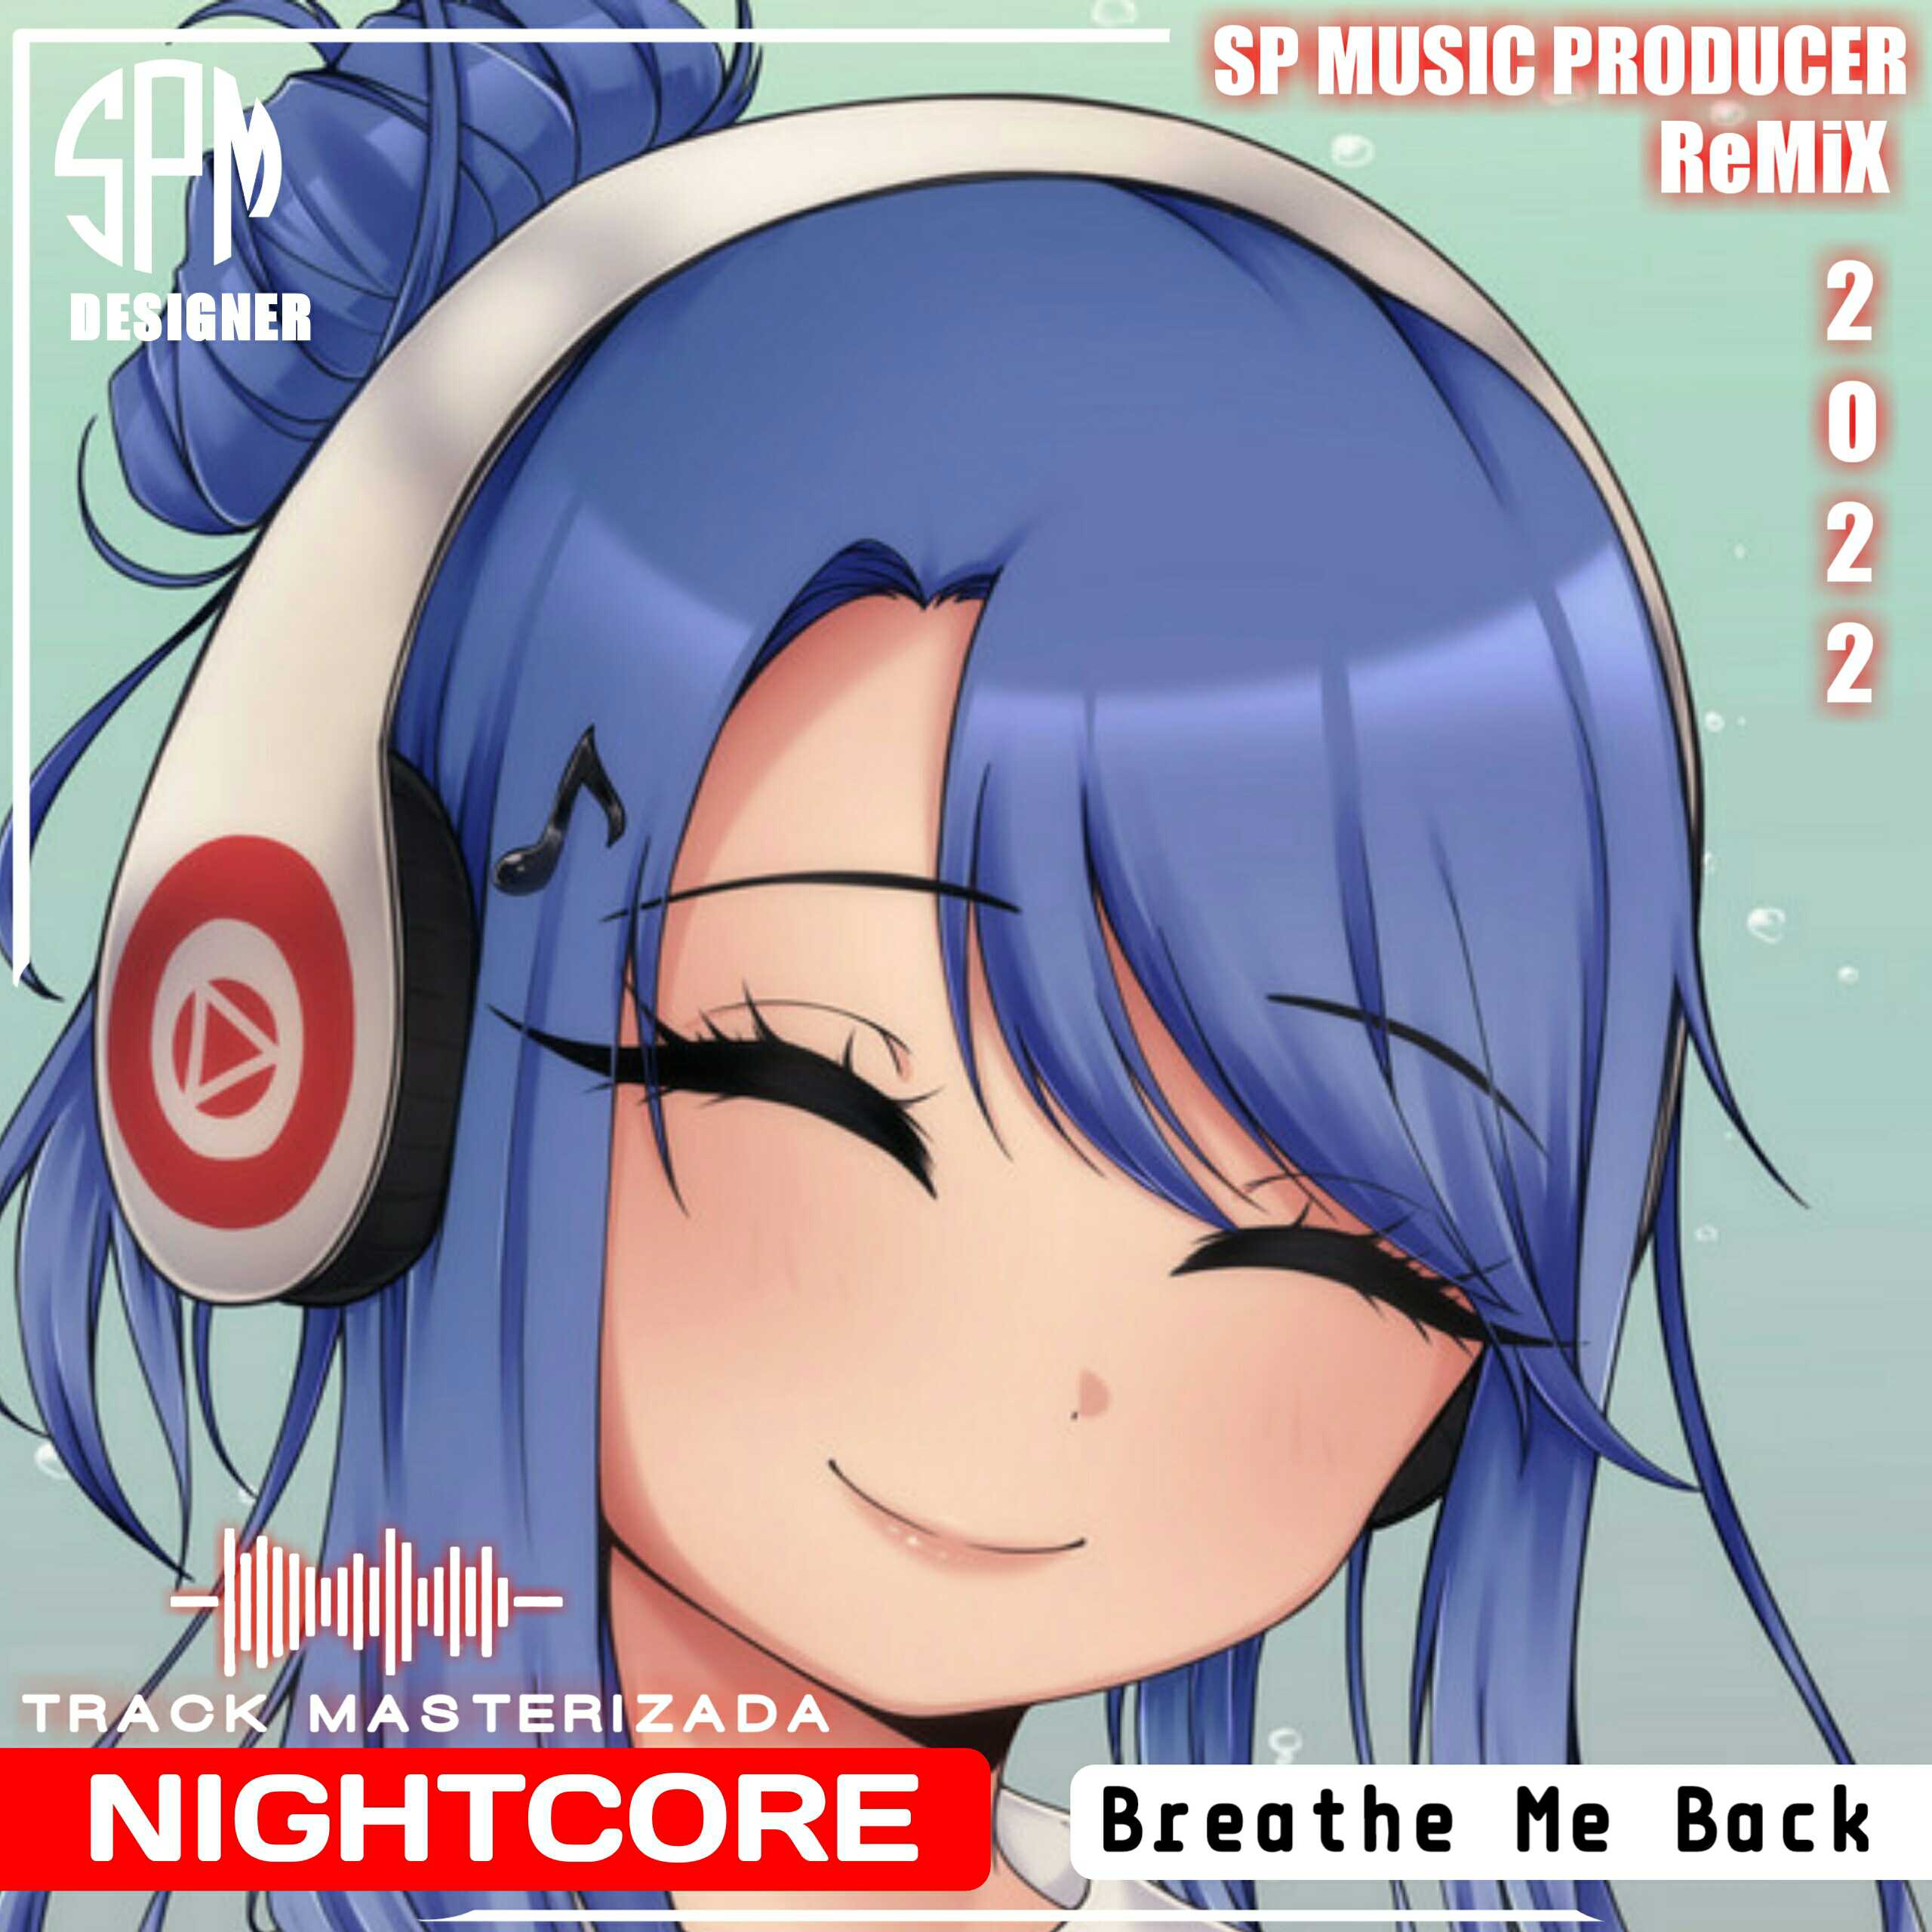 Nightcore - Breathe Me Back (SP MUSIC PRODUCER REMIX RADIO 2O22) [130 BPM]